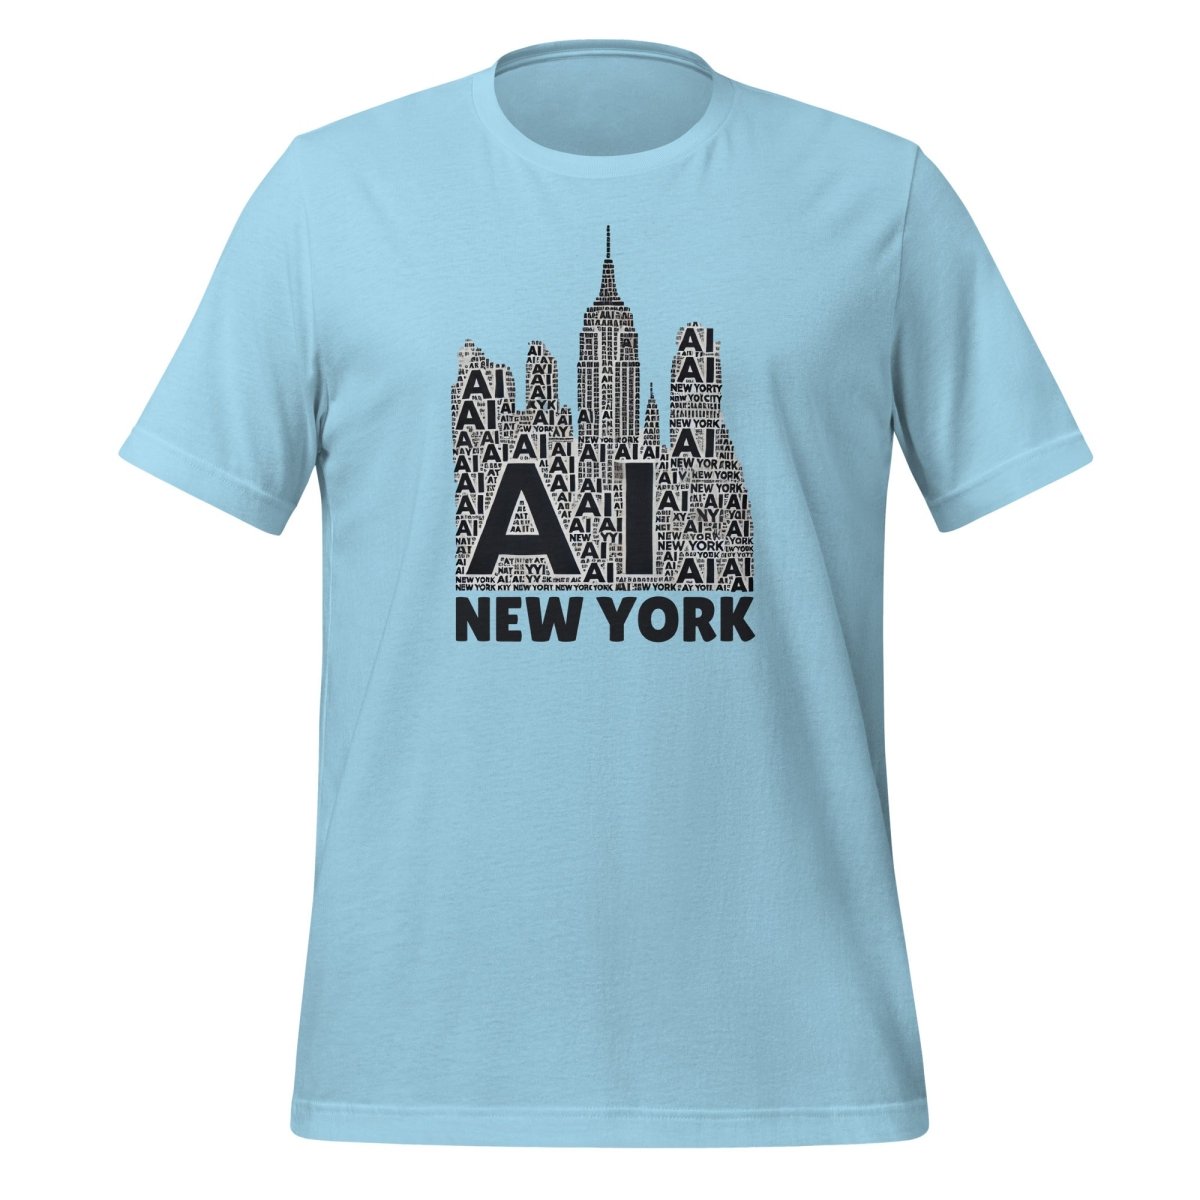 New York AI T - Shirt (unisex) - Ocean Blue - AI Store